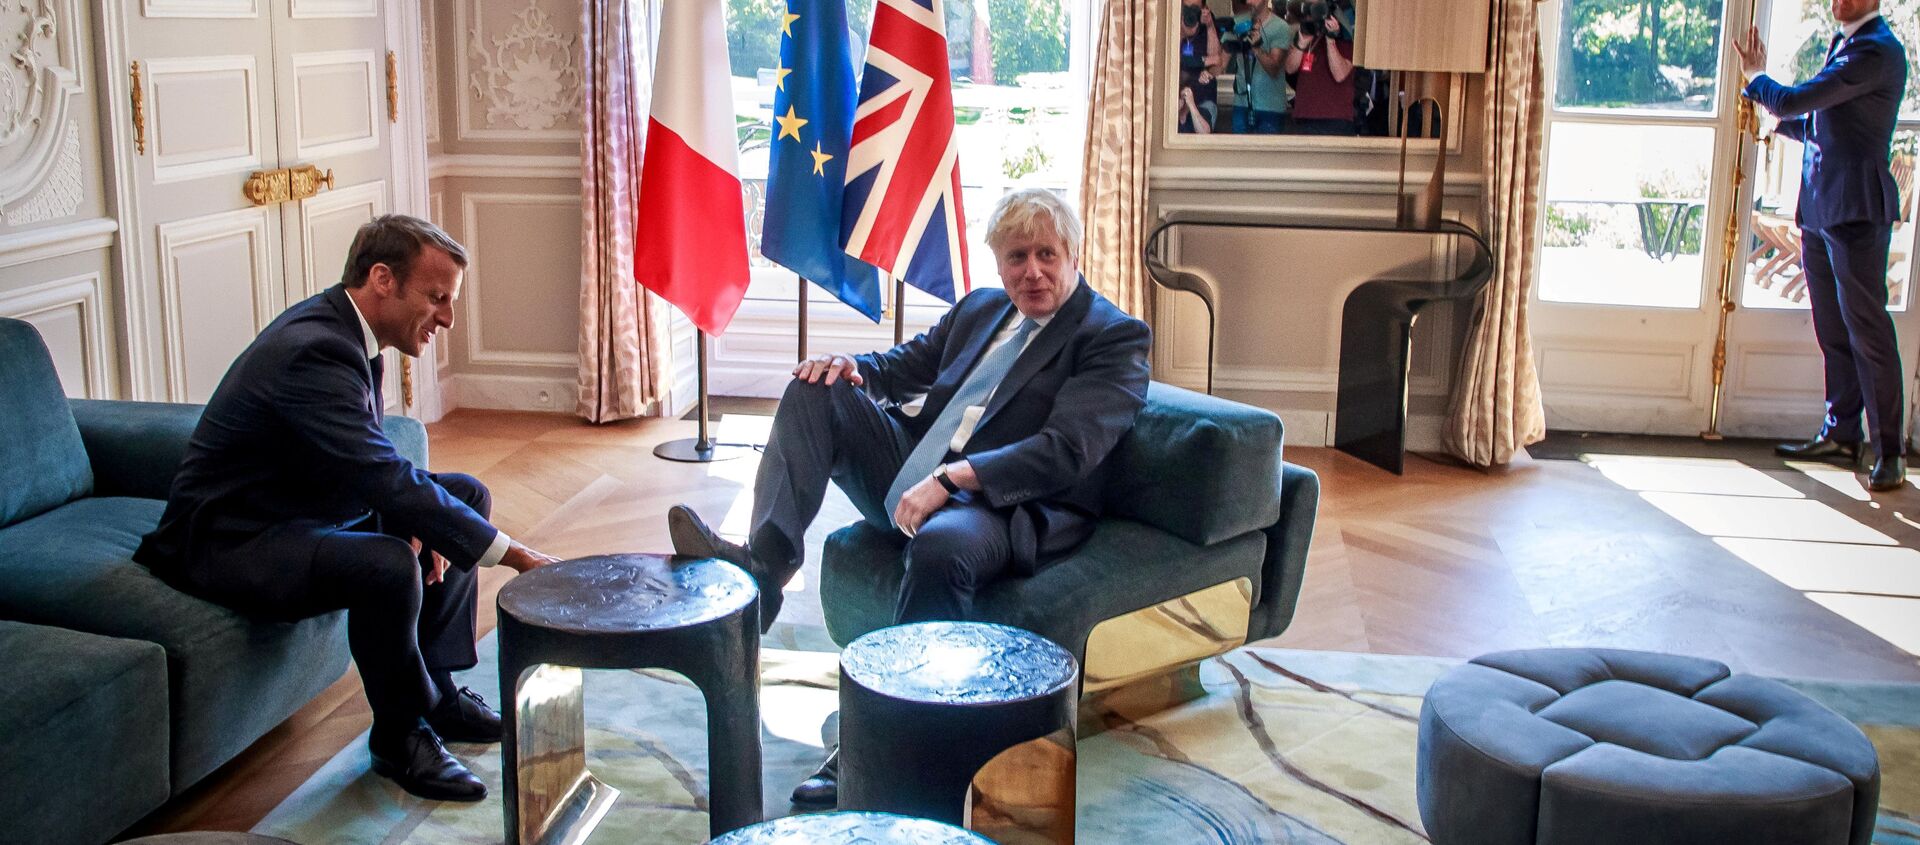 رئيس وزراء بريطانيا بوريس جونسون يضع قدمه على طاولة أمام الرئيس الفرنسي إيمانويل ماكرون بداخل قصر الإليزيه بالعاصمة الفرنسية باريس، 22 أغسطس/آب 2019 - سبوتنيك عربي, 1920, 12.12.2020